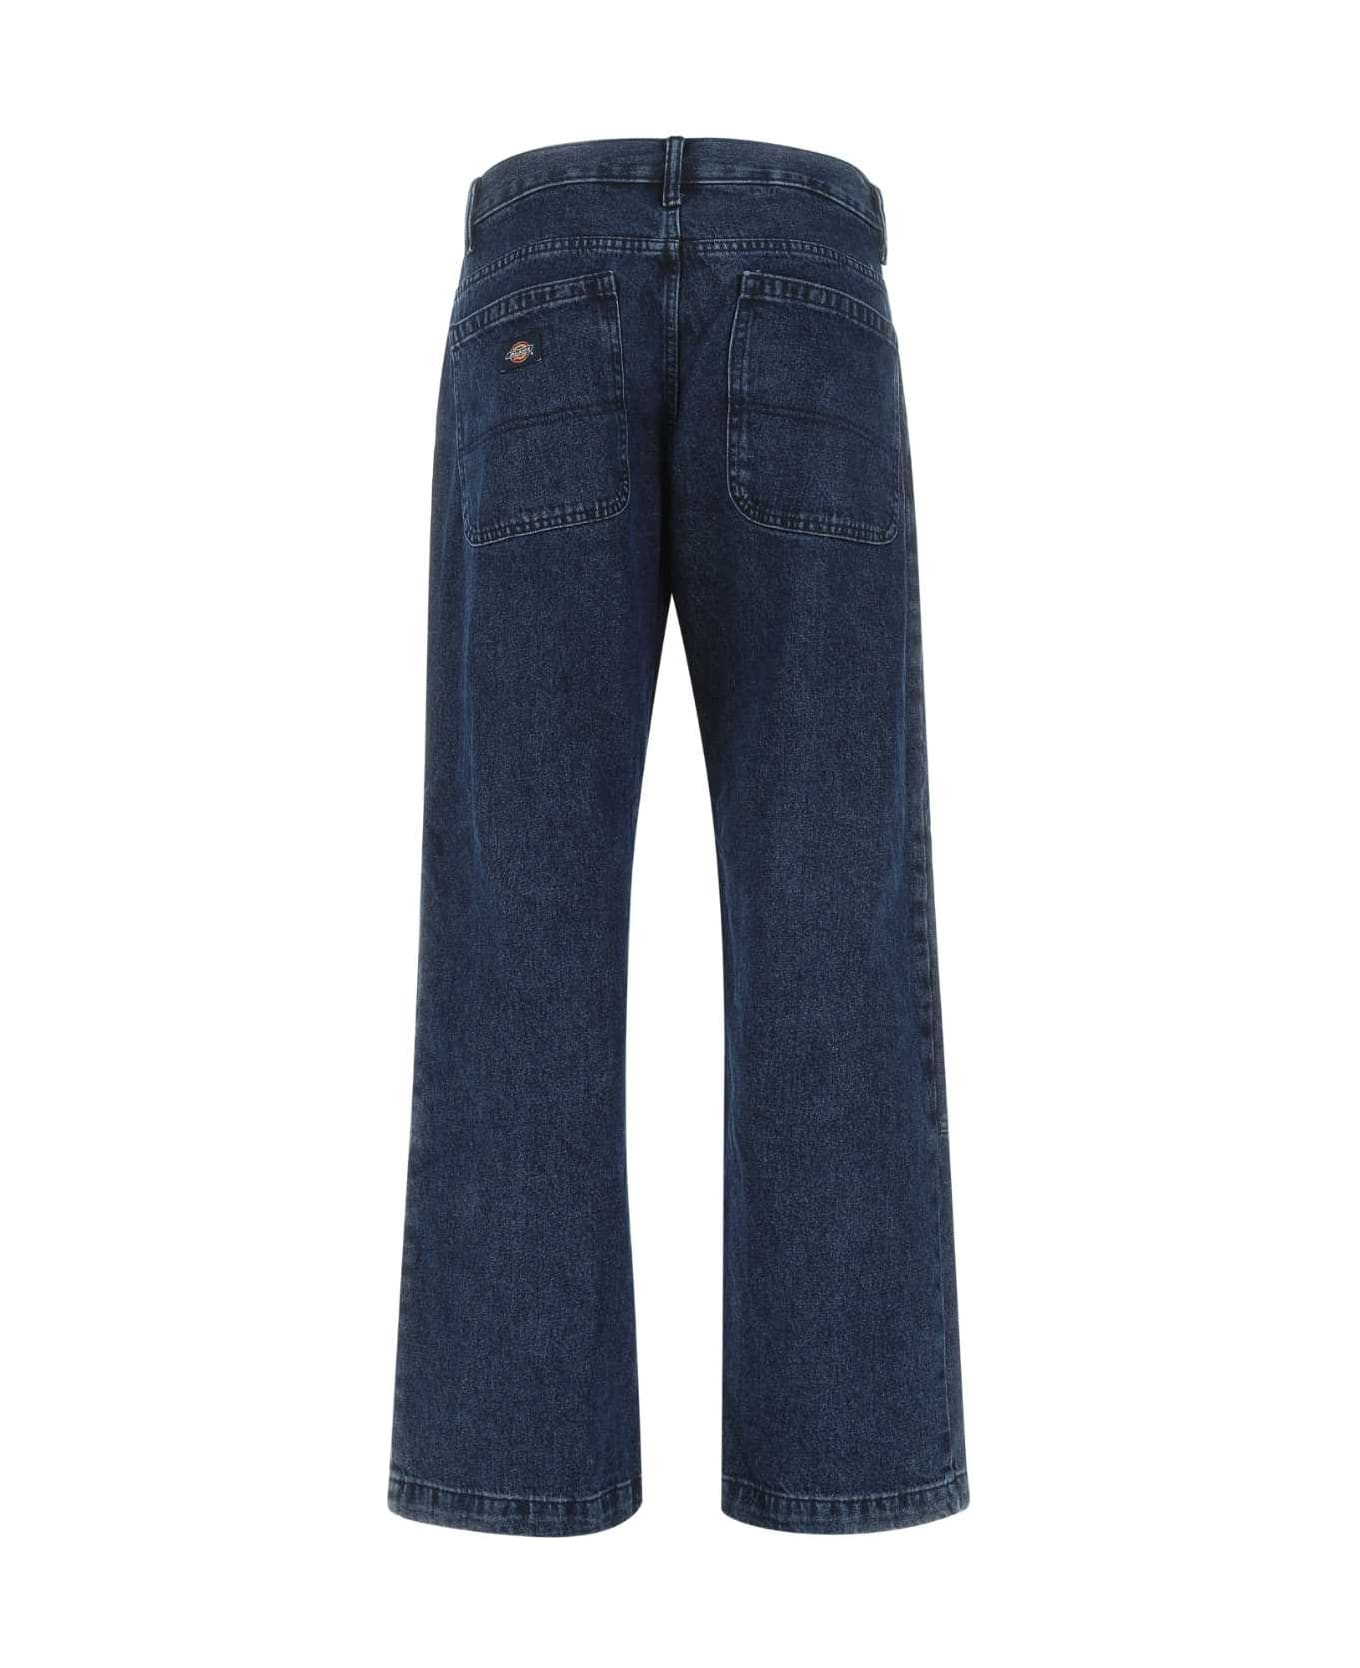 Dickies Blue Denim Jeans - IND1